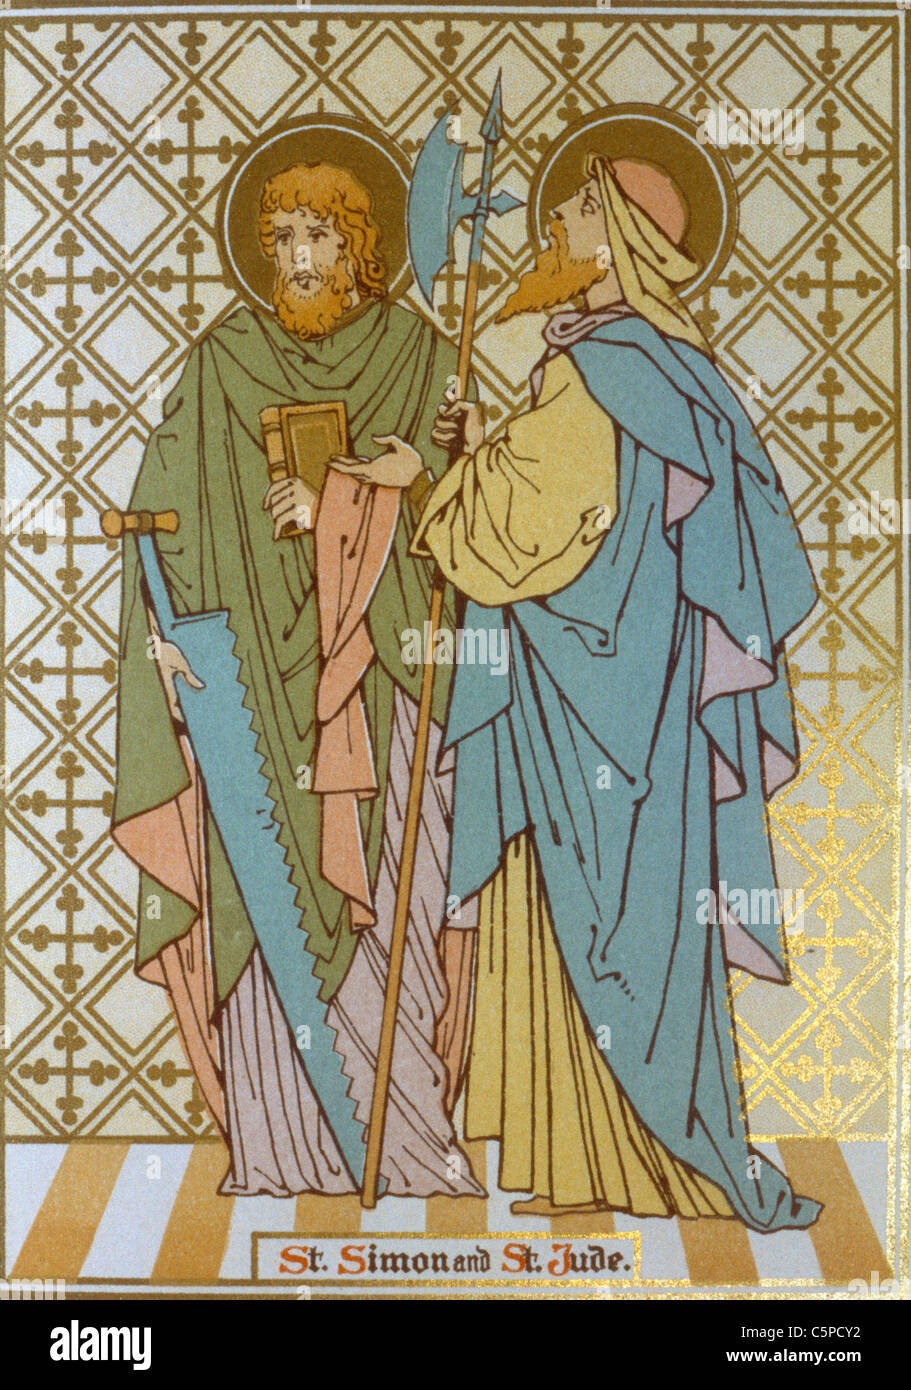 Saint Simon and Saint Jude two Apostles of the Twelve Apostles of Jesus Stock Photo